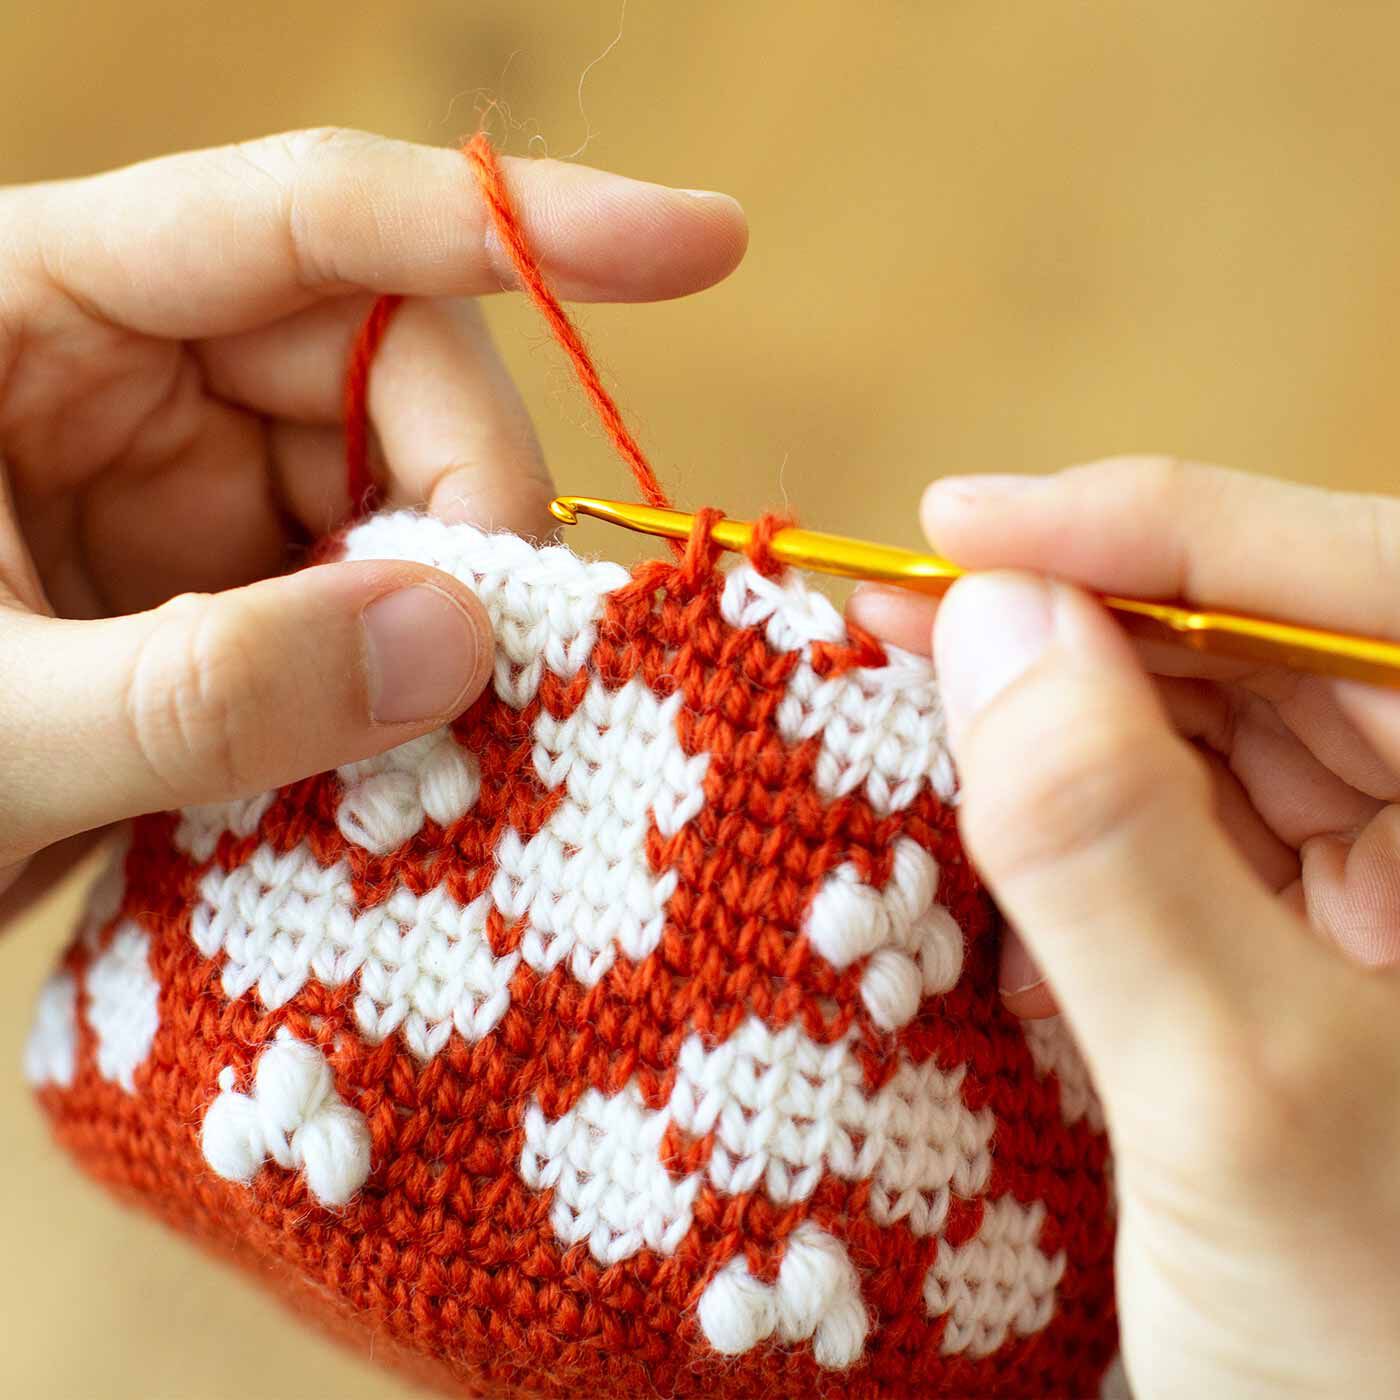 クチュリエ|北欧模様がポップでかわいい かぎ針編みポーチの会|メリヤスこま編みは前段のこま編みの足を拾って編むことで、棒針のメリヤス編みのような編み地に。編み地に強度があって伸びにくいので、作ったアイテムは気兼ねなくふだん使いできます。